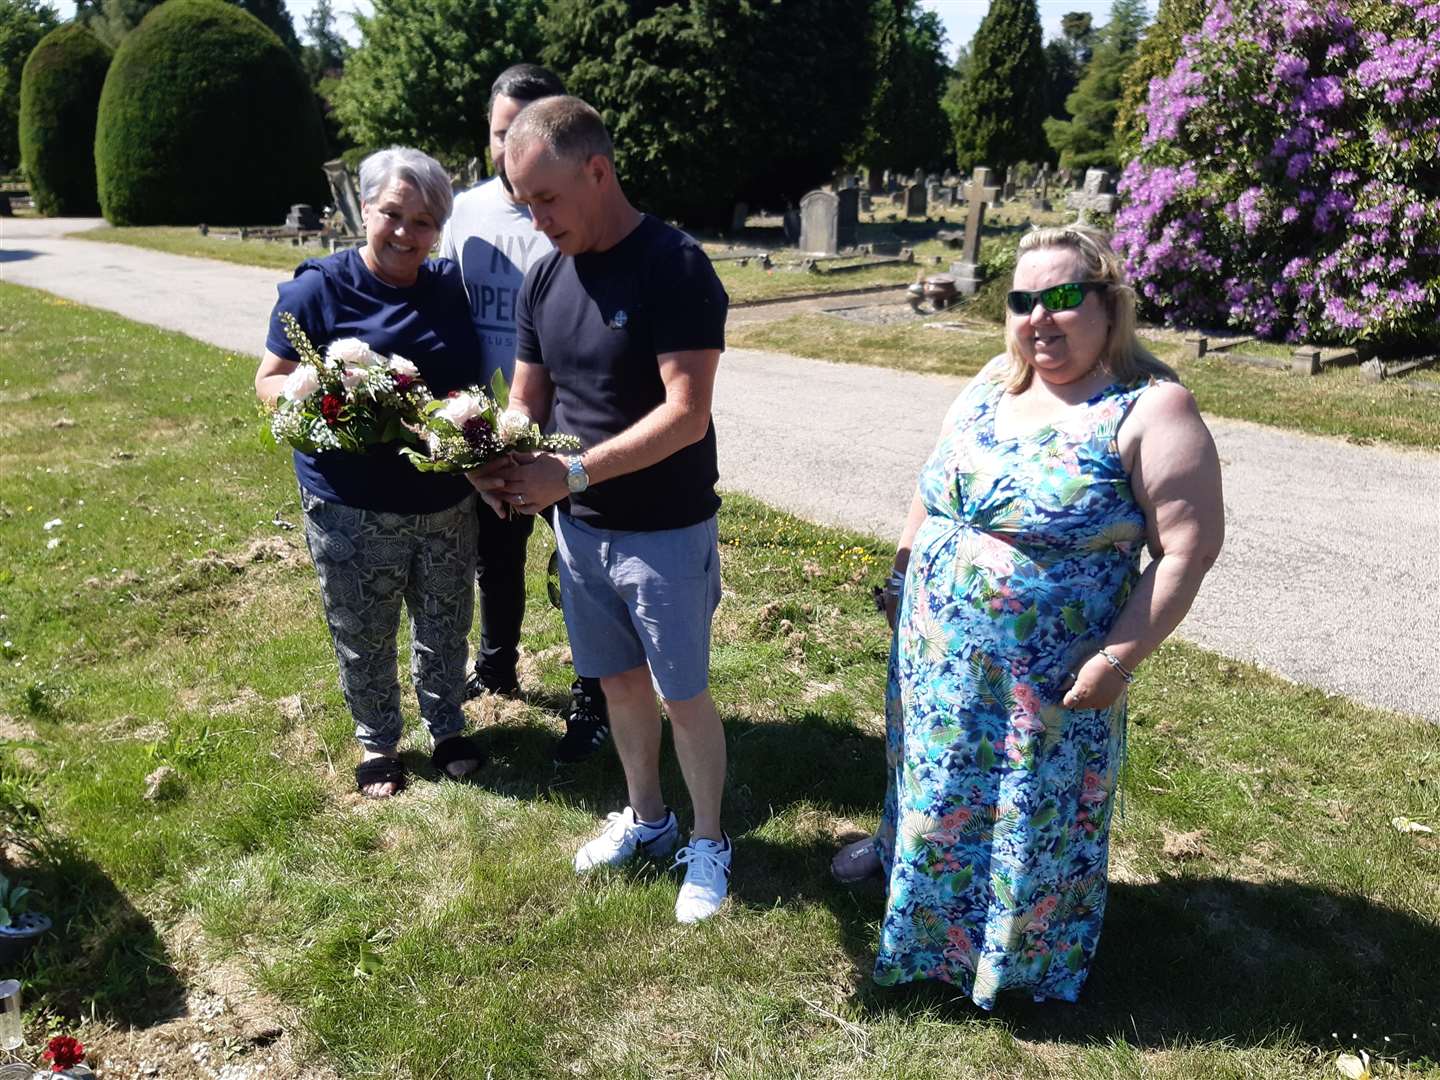 Claire Sharp, Bill Millen junior, Stephen Cullen and Karen Millen, by Bill Millen's grave in Maidstone Cemetery